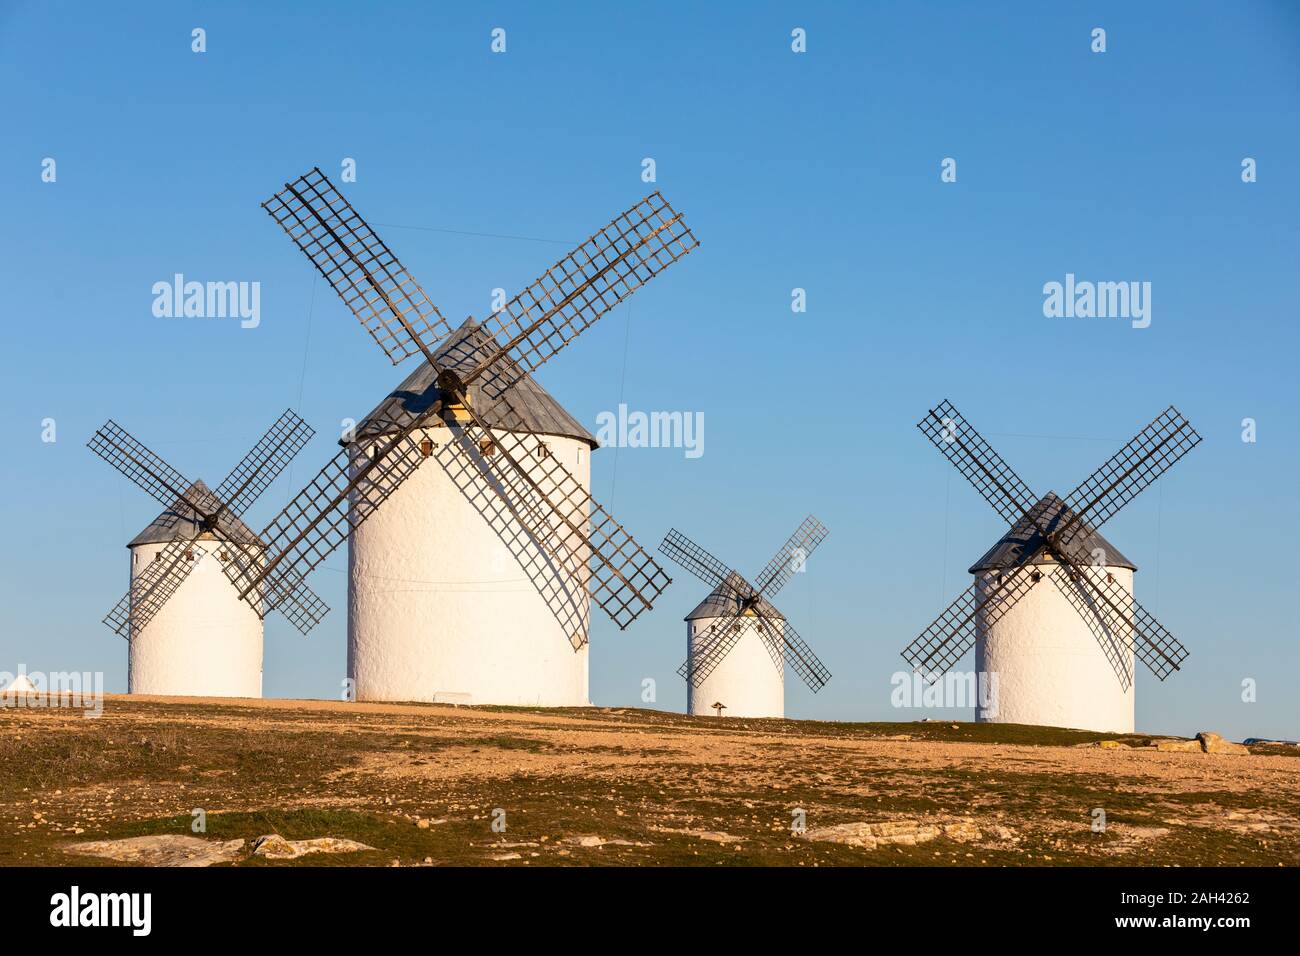 Espagne, province de Ciudad Real, Campo de Criptana, campagne moulins à vent debout contre le ciel clair Banque D'Images